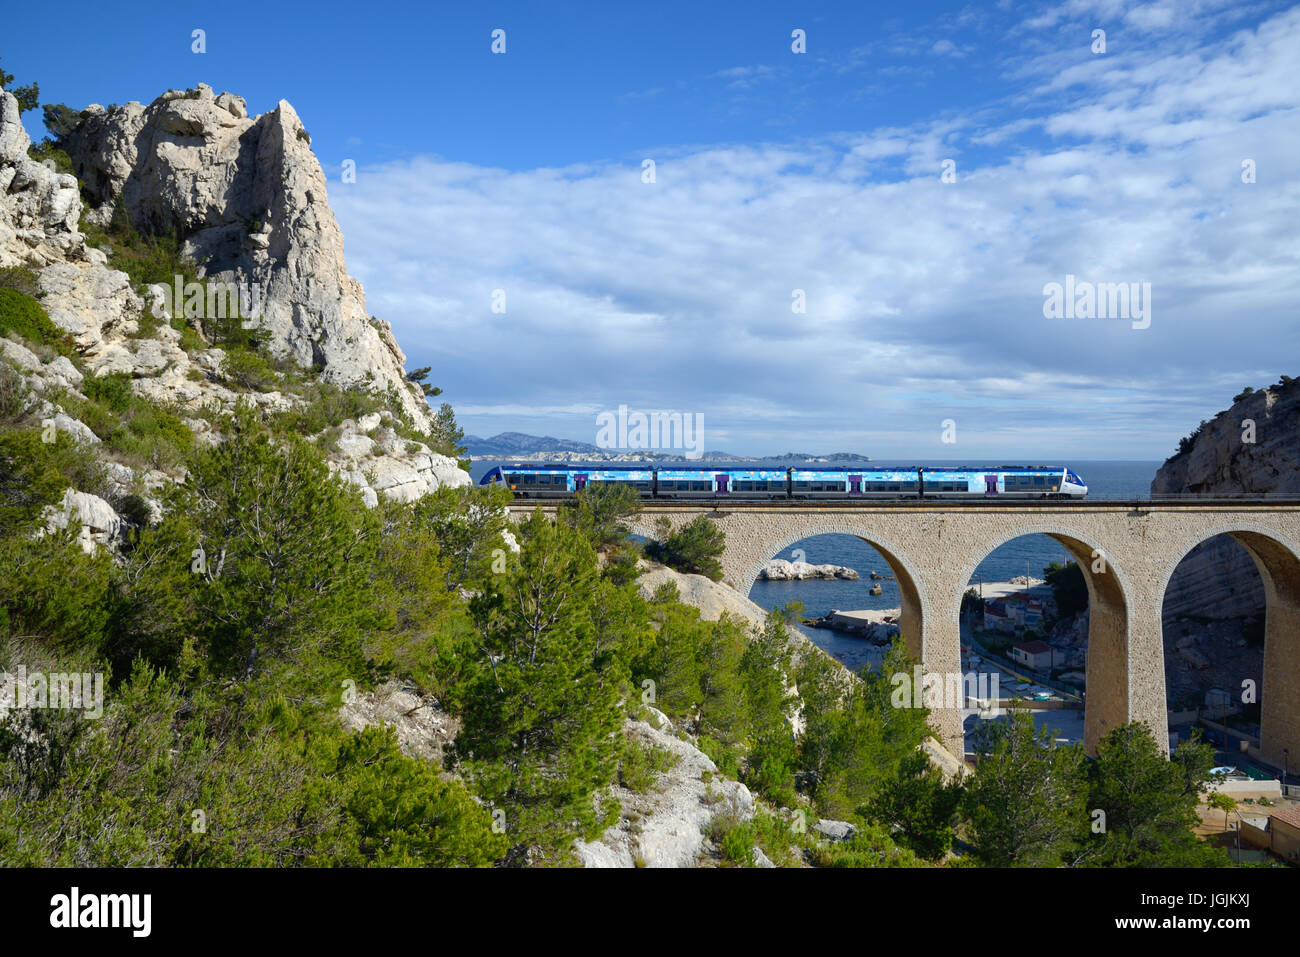 Locale o treno regionale incrocio viadotto ferroviario a La Calanque Vesse sul Mediterraneo La Côte bleue o blu costa ad ovest di Marsiglia Francia Foto Stock